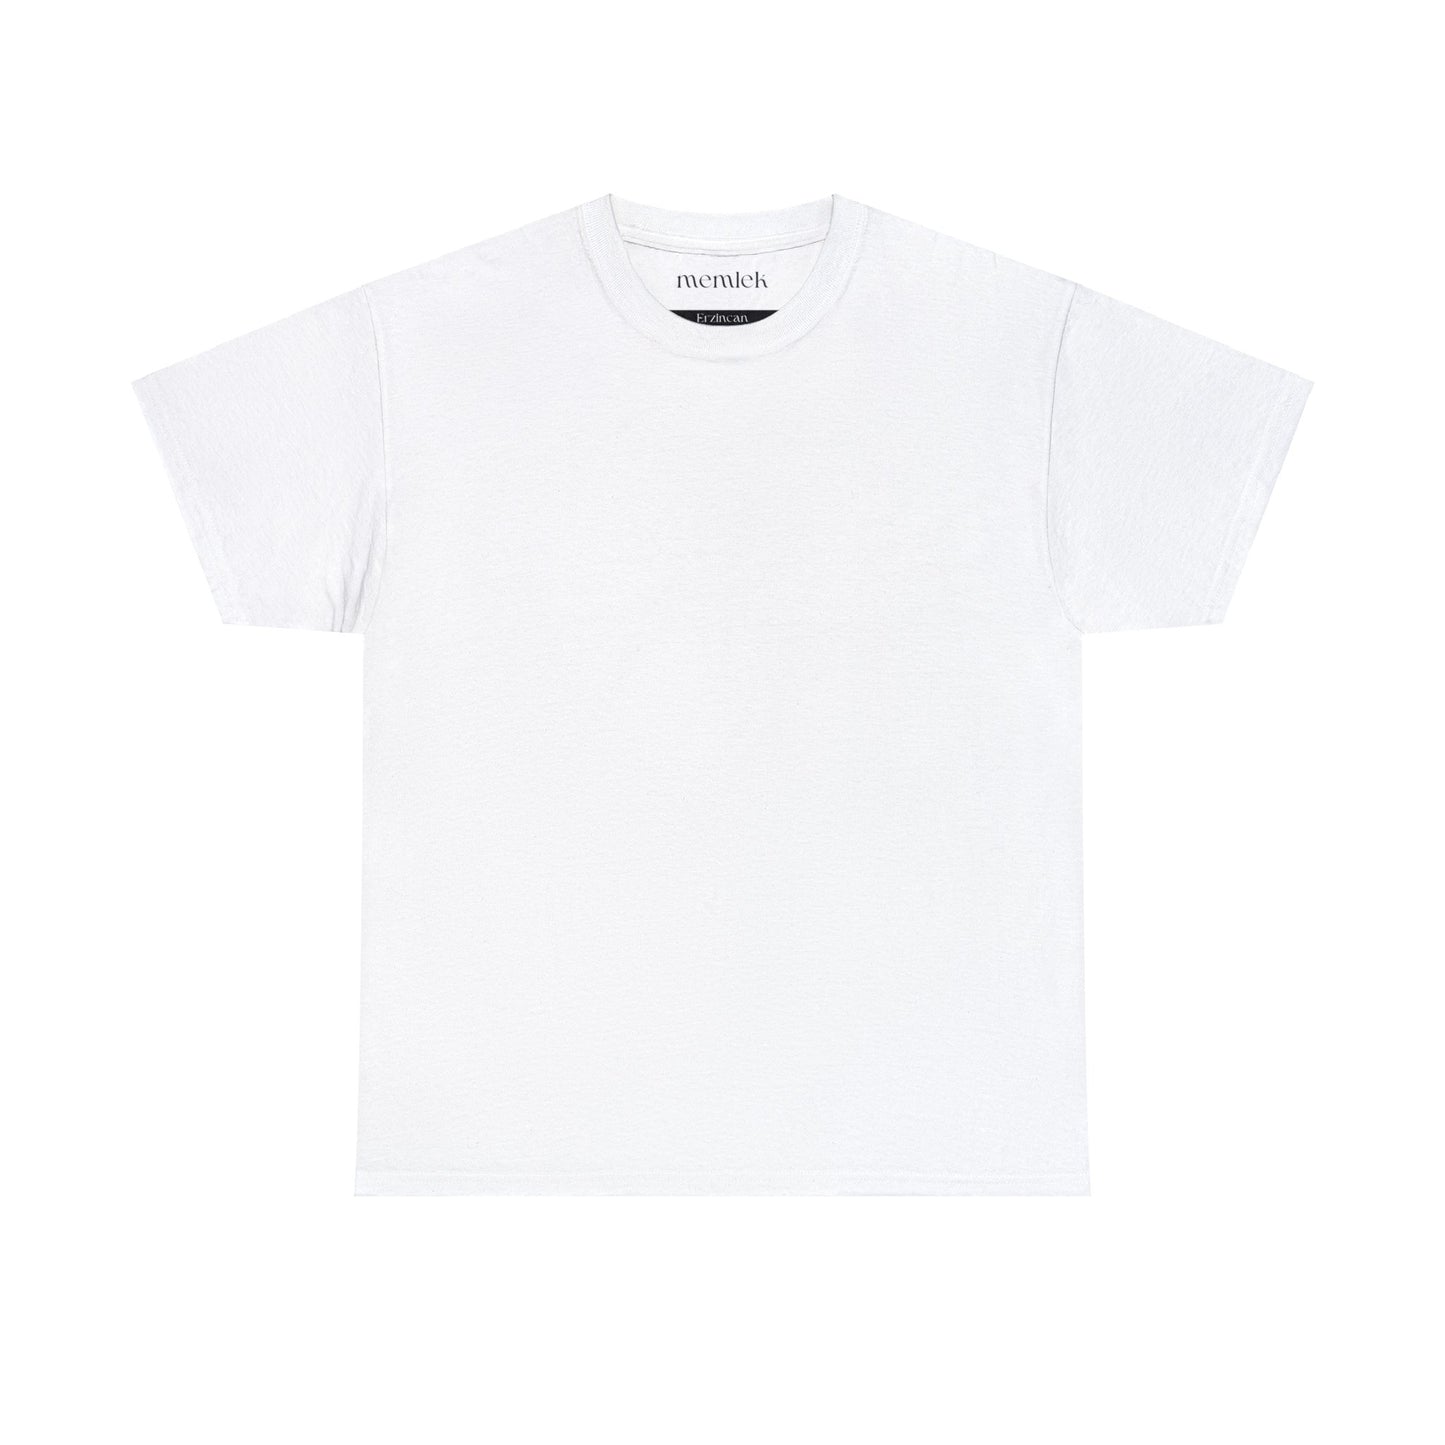 Siyah Lale - 24 Erzincan - T-Shirt - Back Print - Black/White